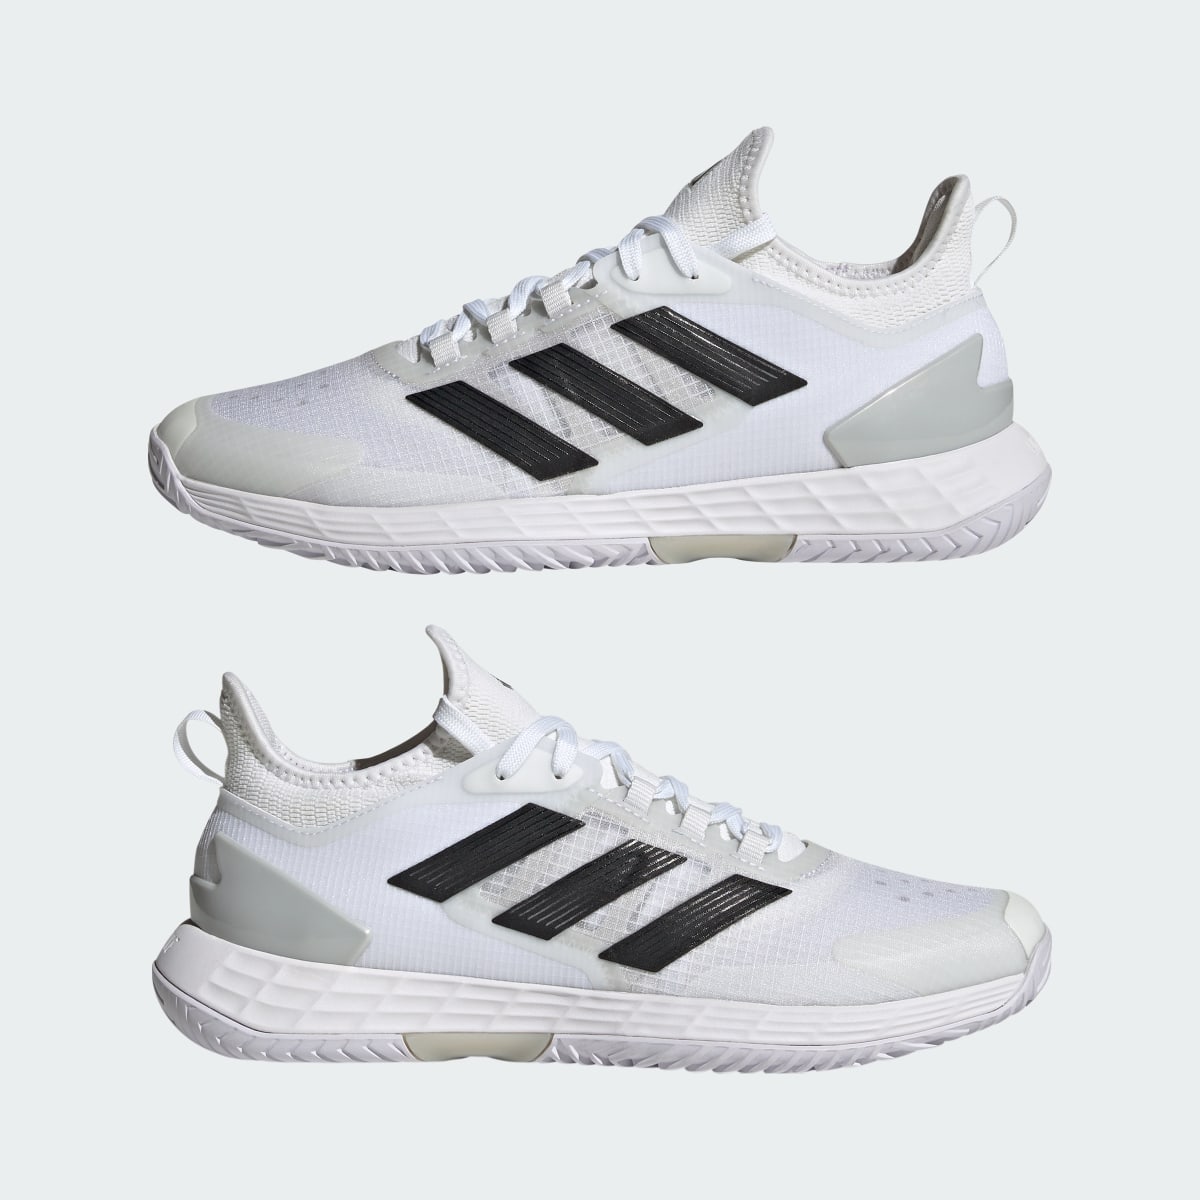 Adidas Adizero Ubersonic 4.1 Tennis Shoes. 8